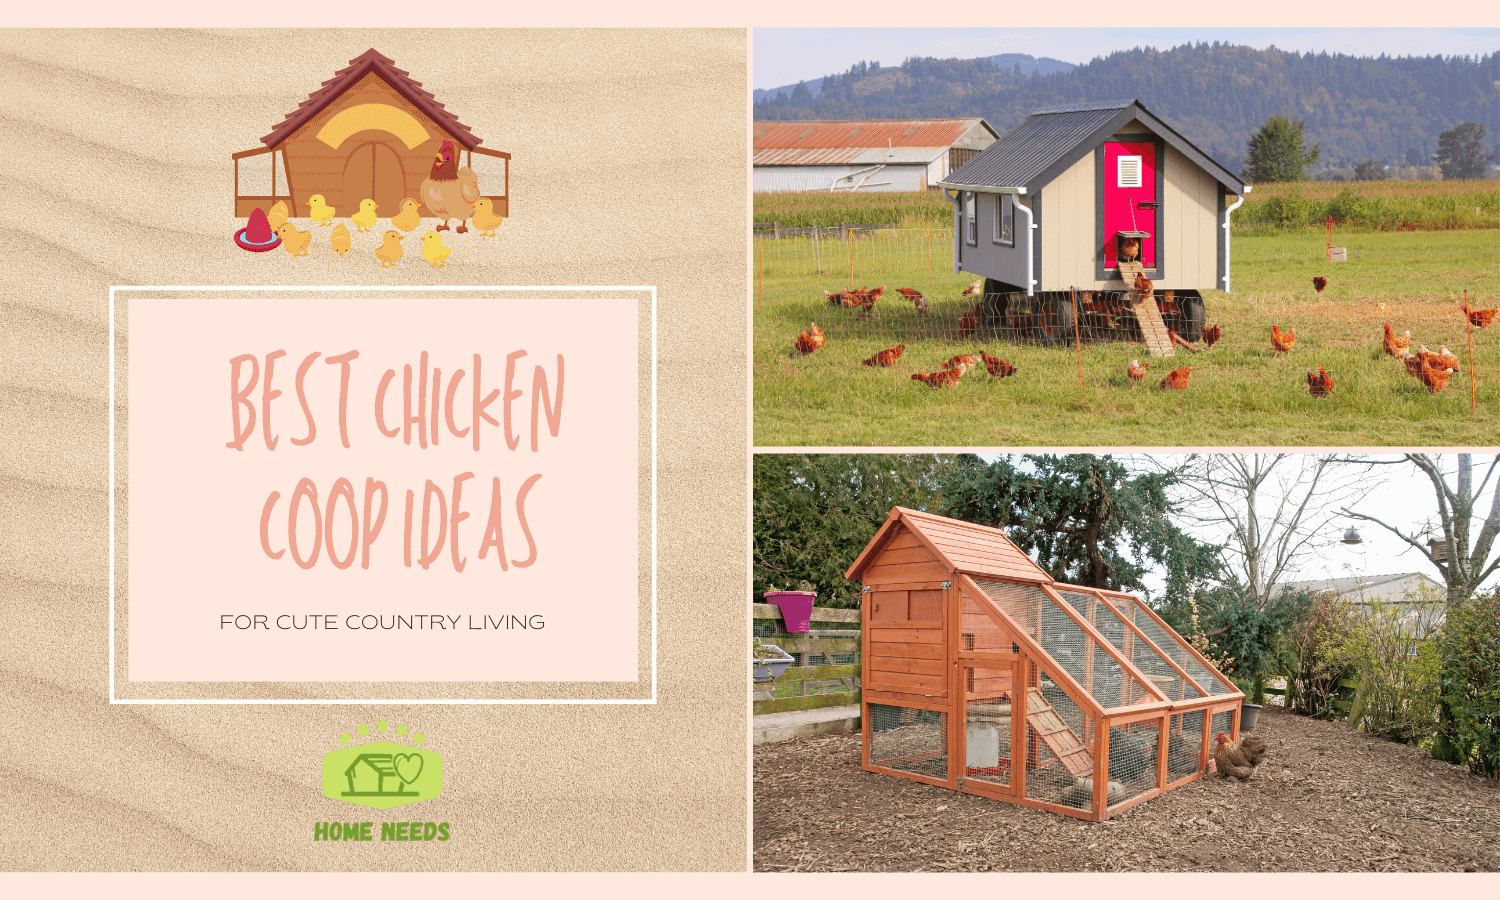 Best Chicken Coop Ideas